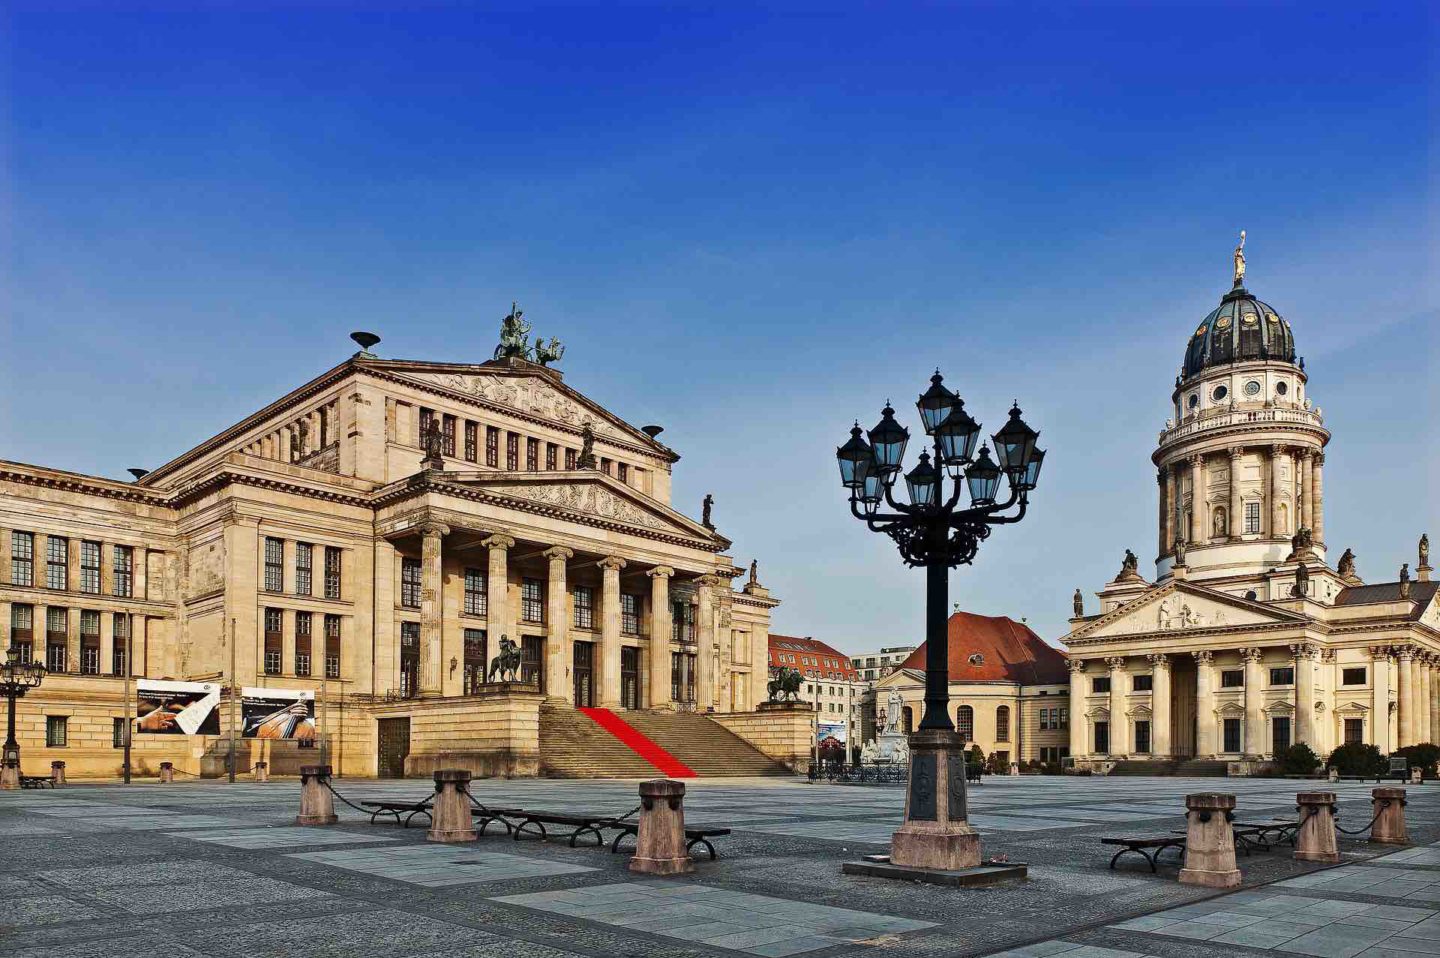 Gendarmenmarkt | Berlin Travel Guide | Berlin City Guide | 3 days in Berlin